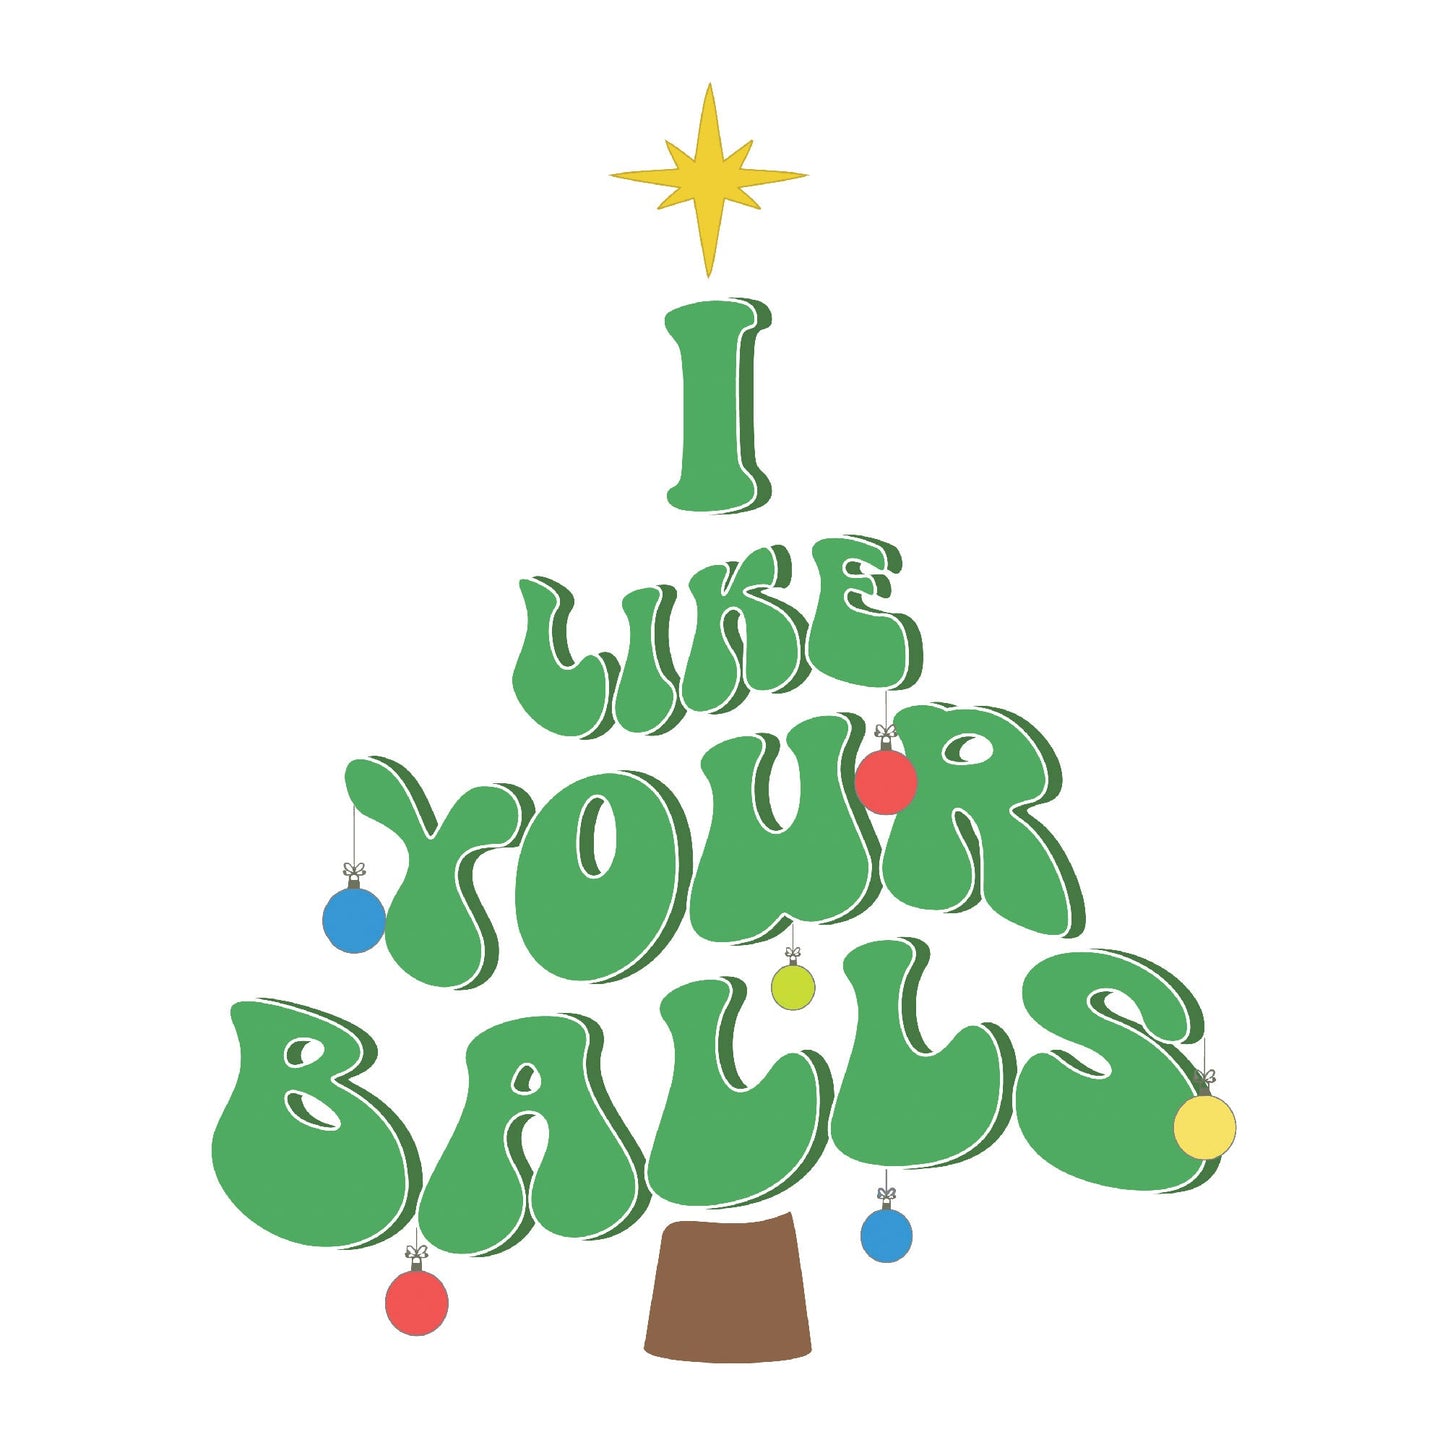 Humorous Holiday Tee 'I Like Your Balls' Christmas T-shirt